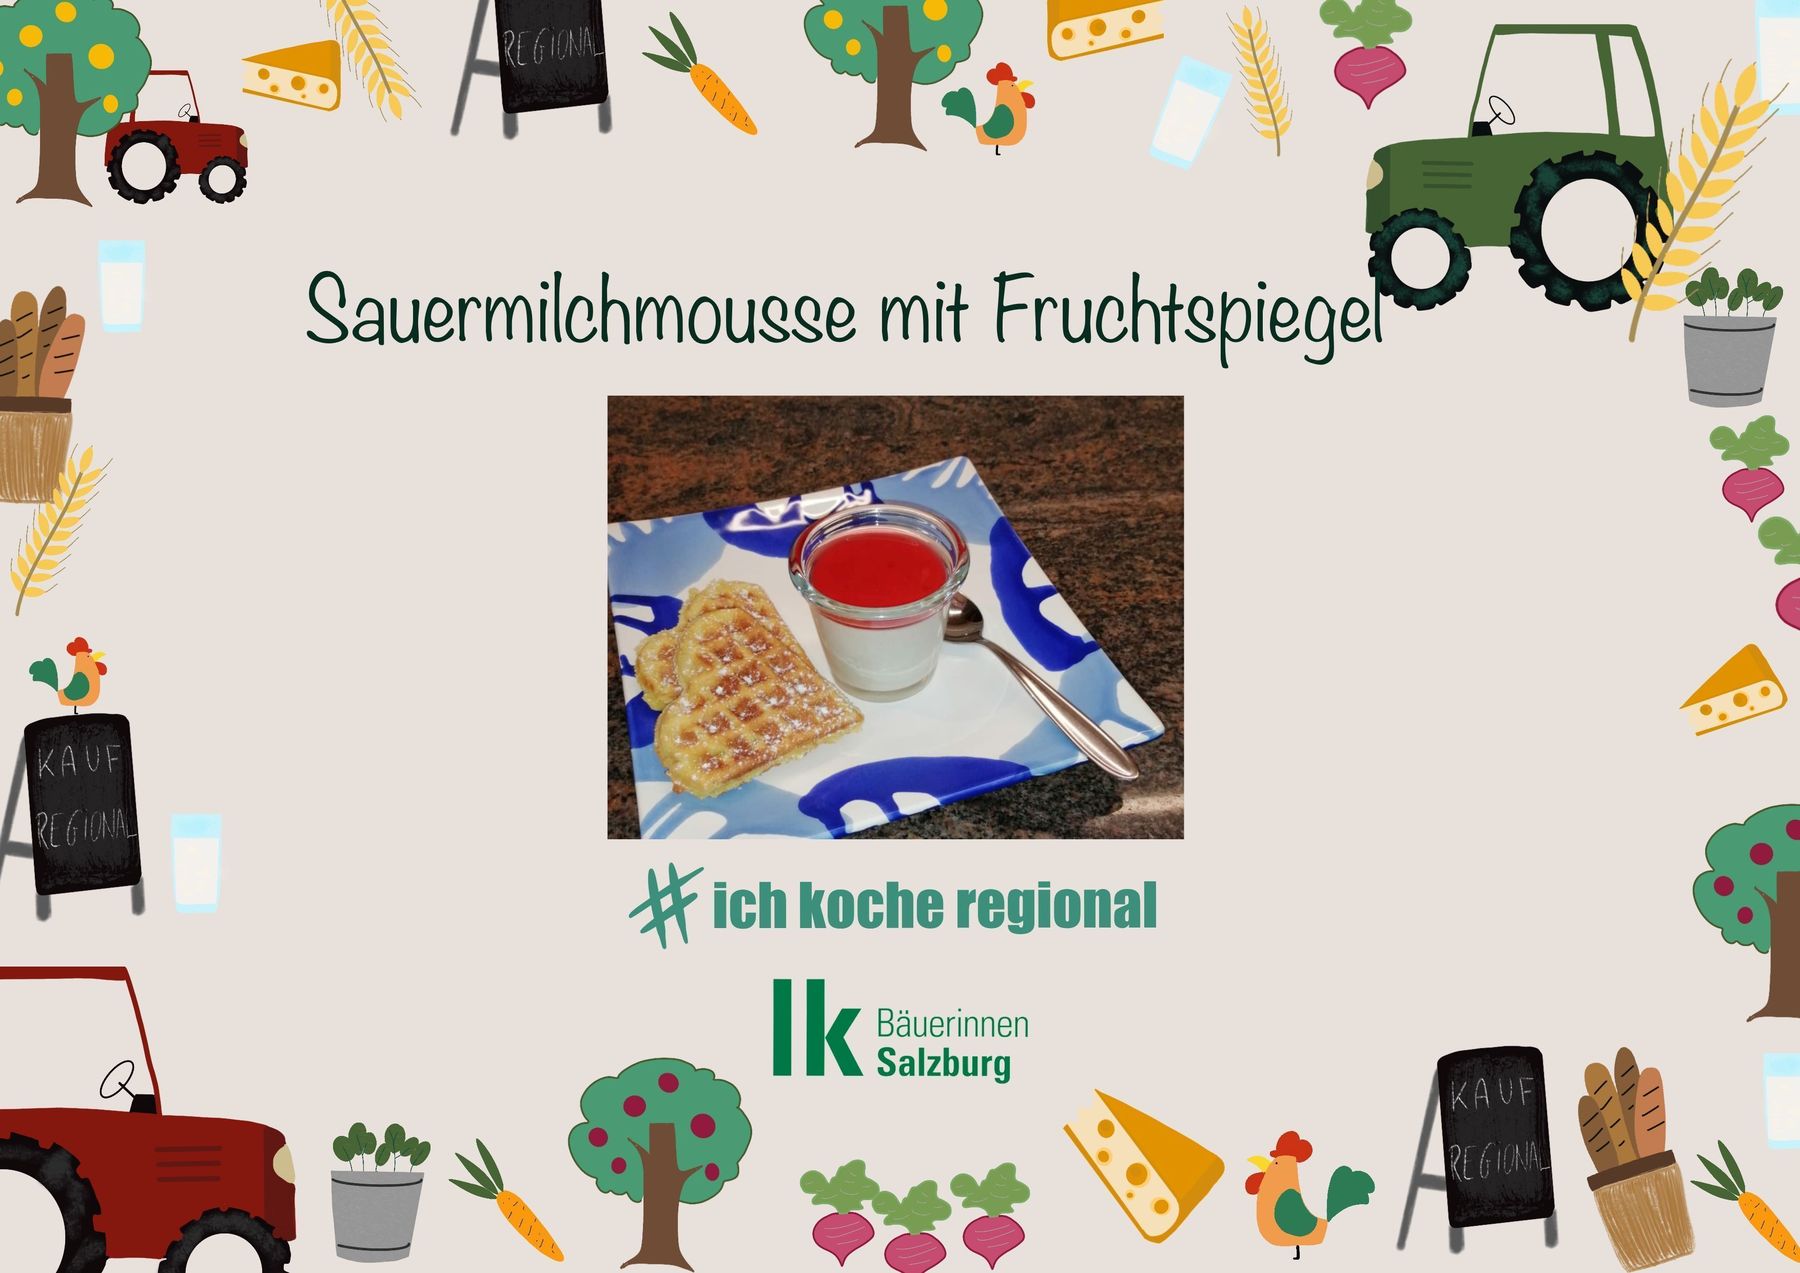 SauermilchmoussemitFruchtspiegel1 © lk salzburg